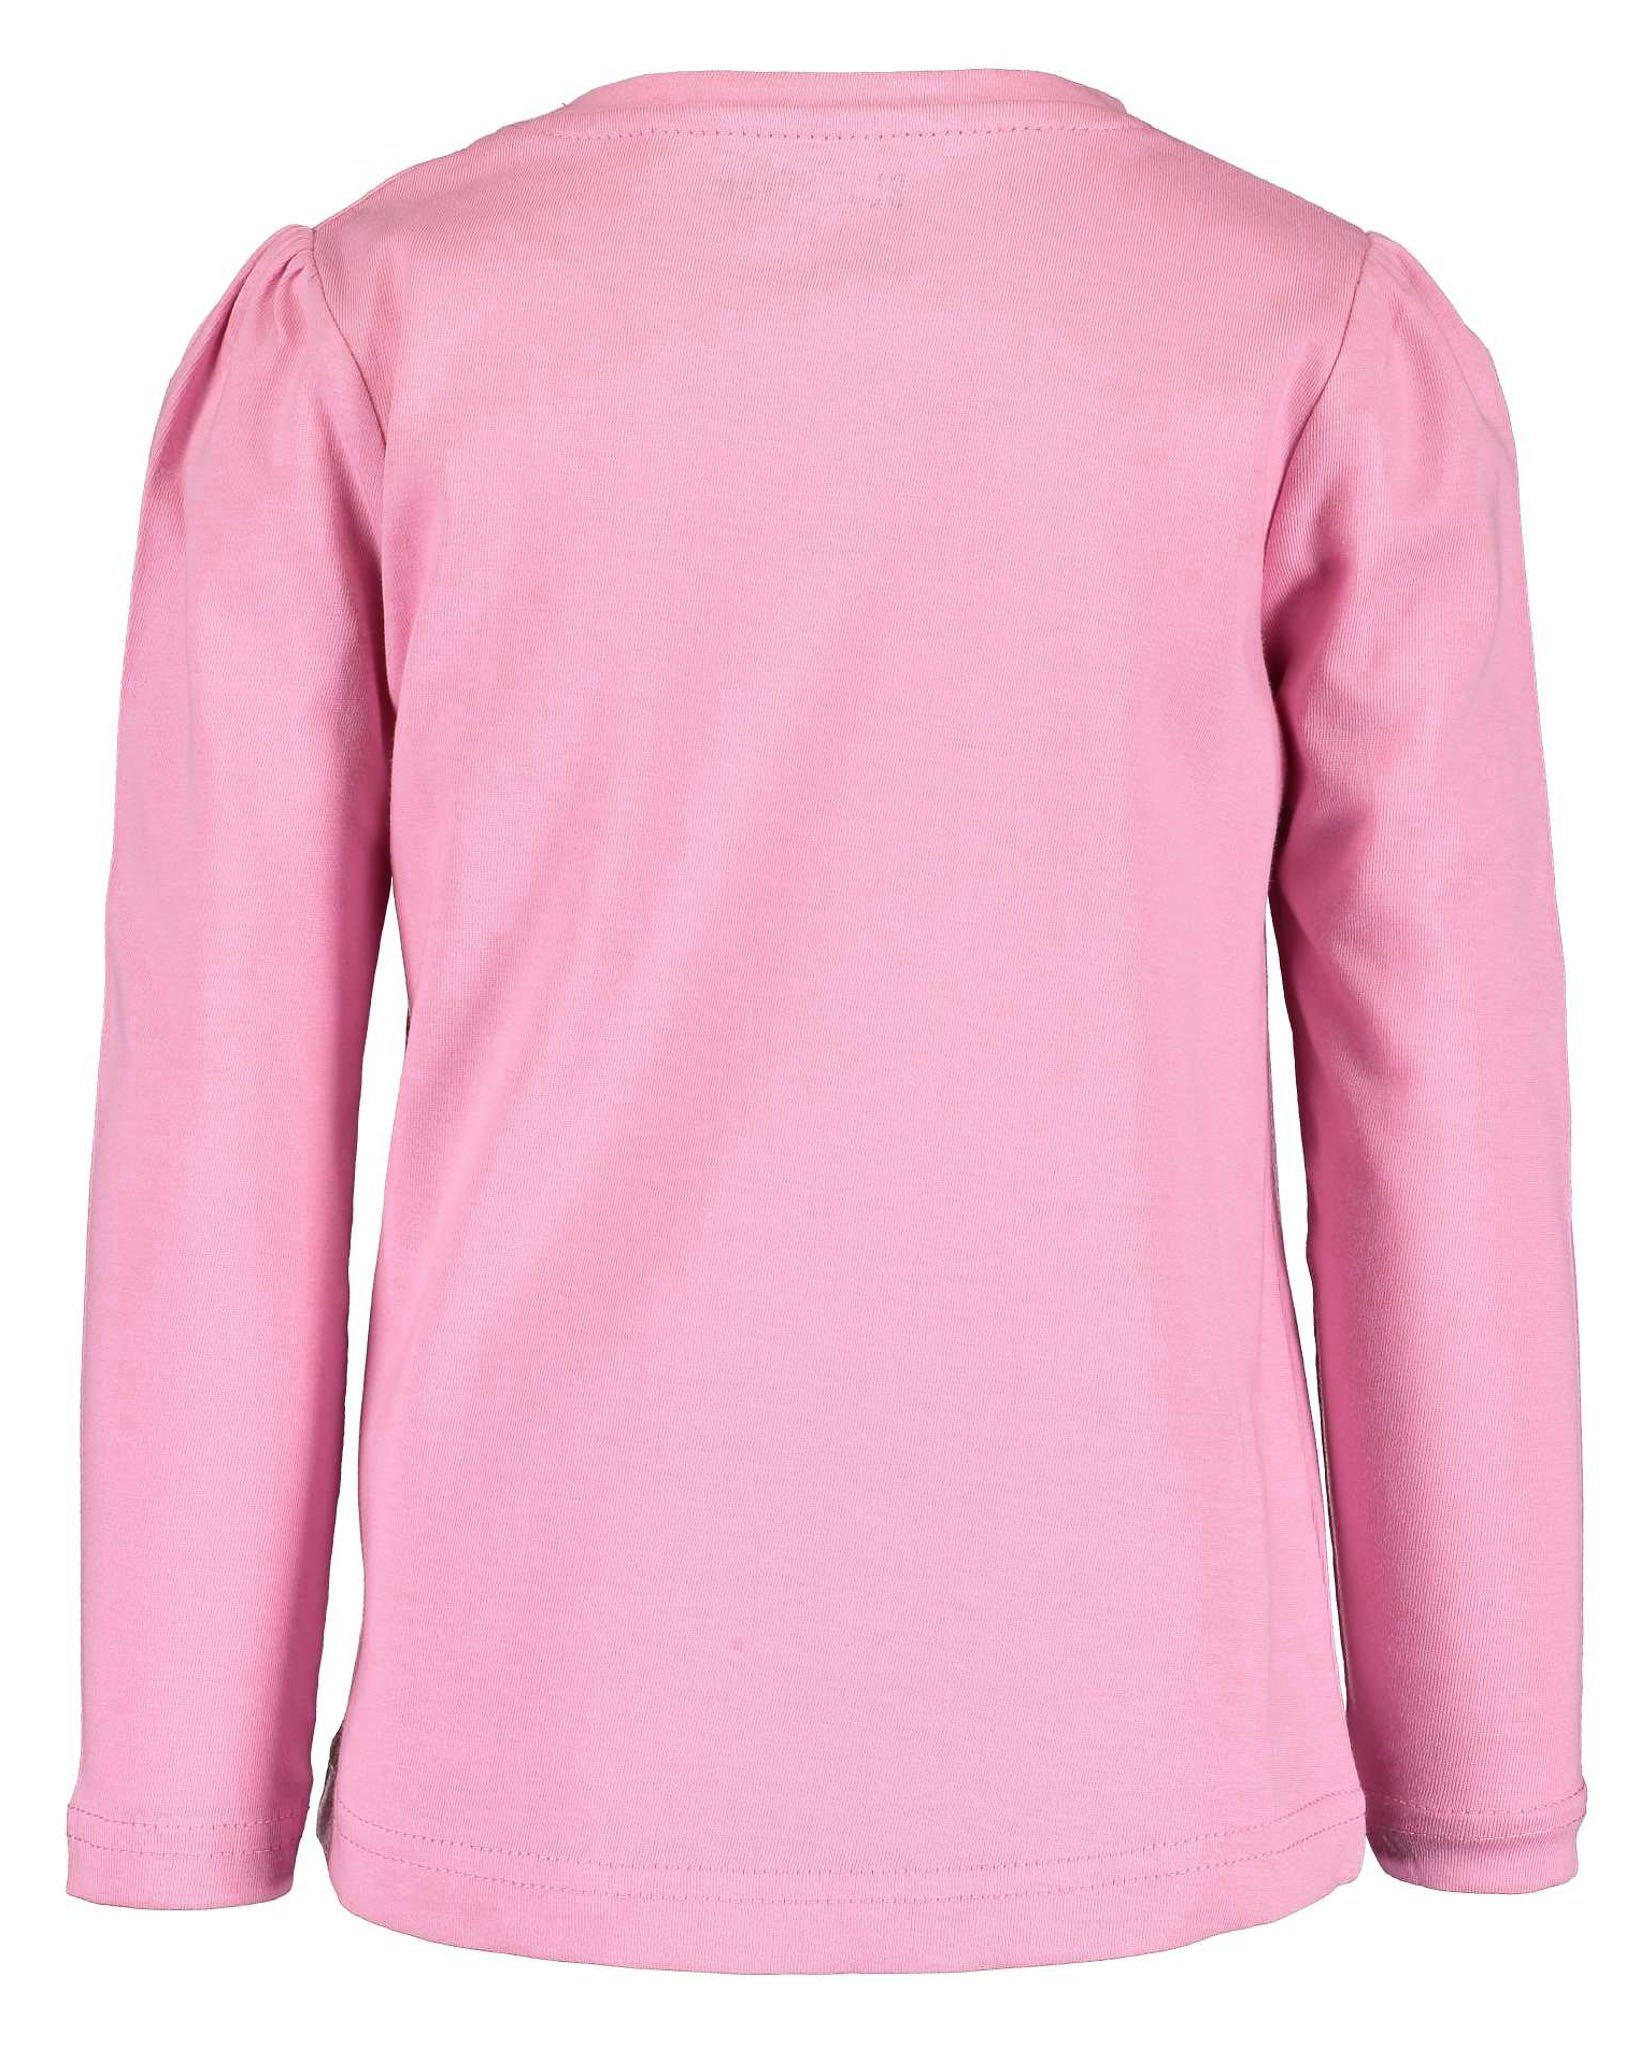 Longsleeve (2-tlg) + reiner aus Baumwolle, Pink Doppelpack Blue Seven Azalee Frontprint für Longsleeve mit Mädchen Orig